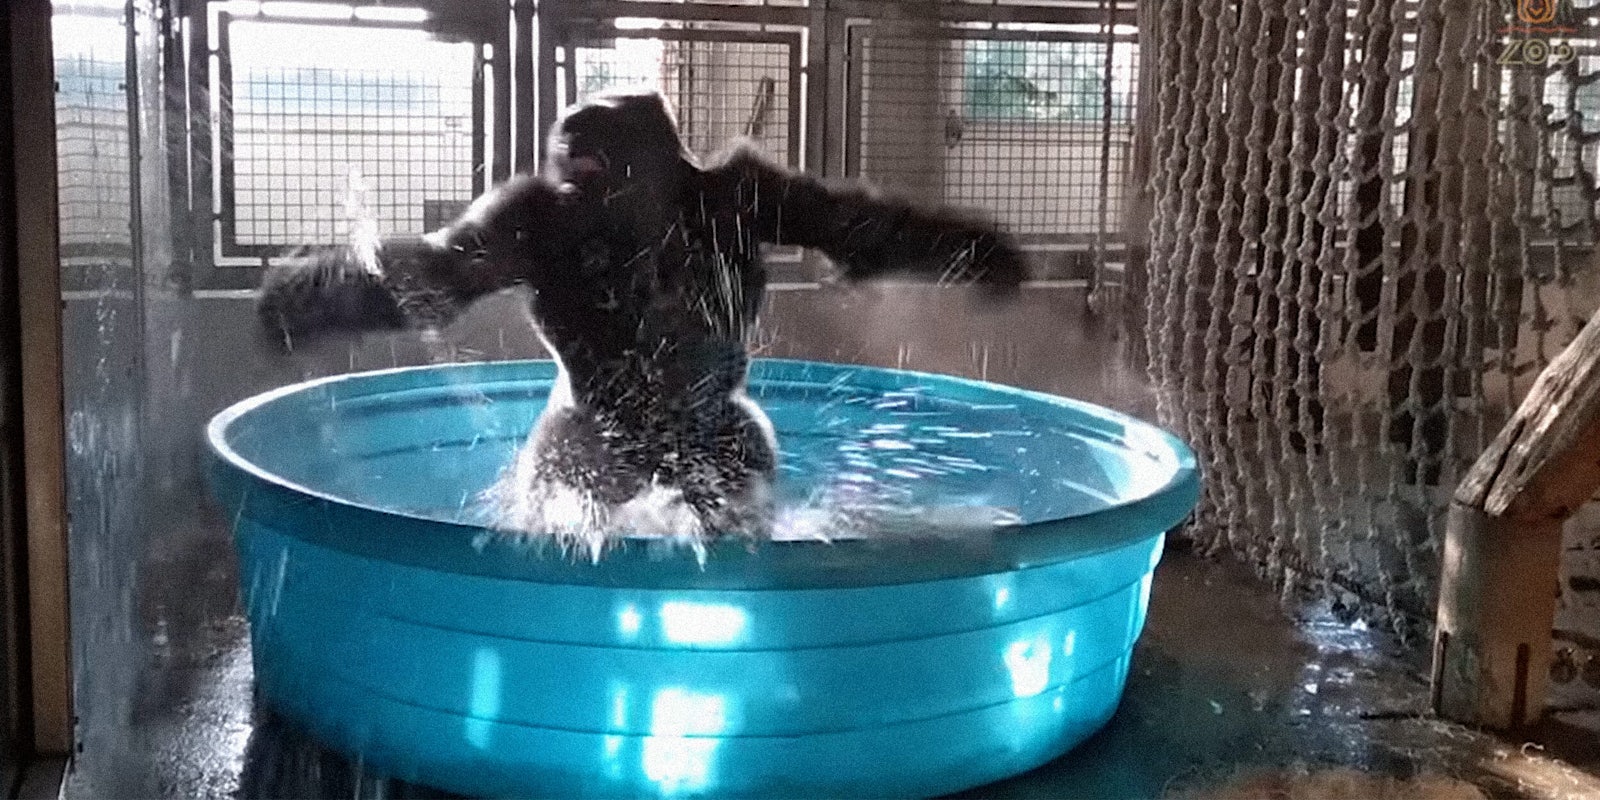 Gorilla dancing in kiddie pool